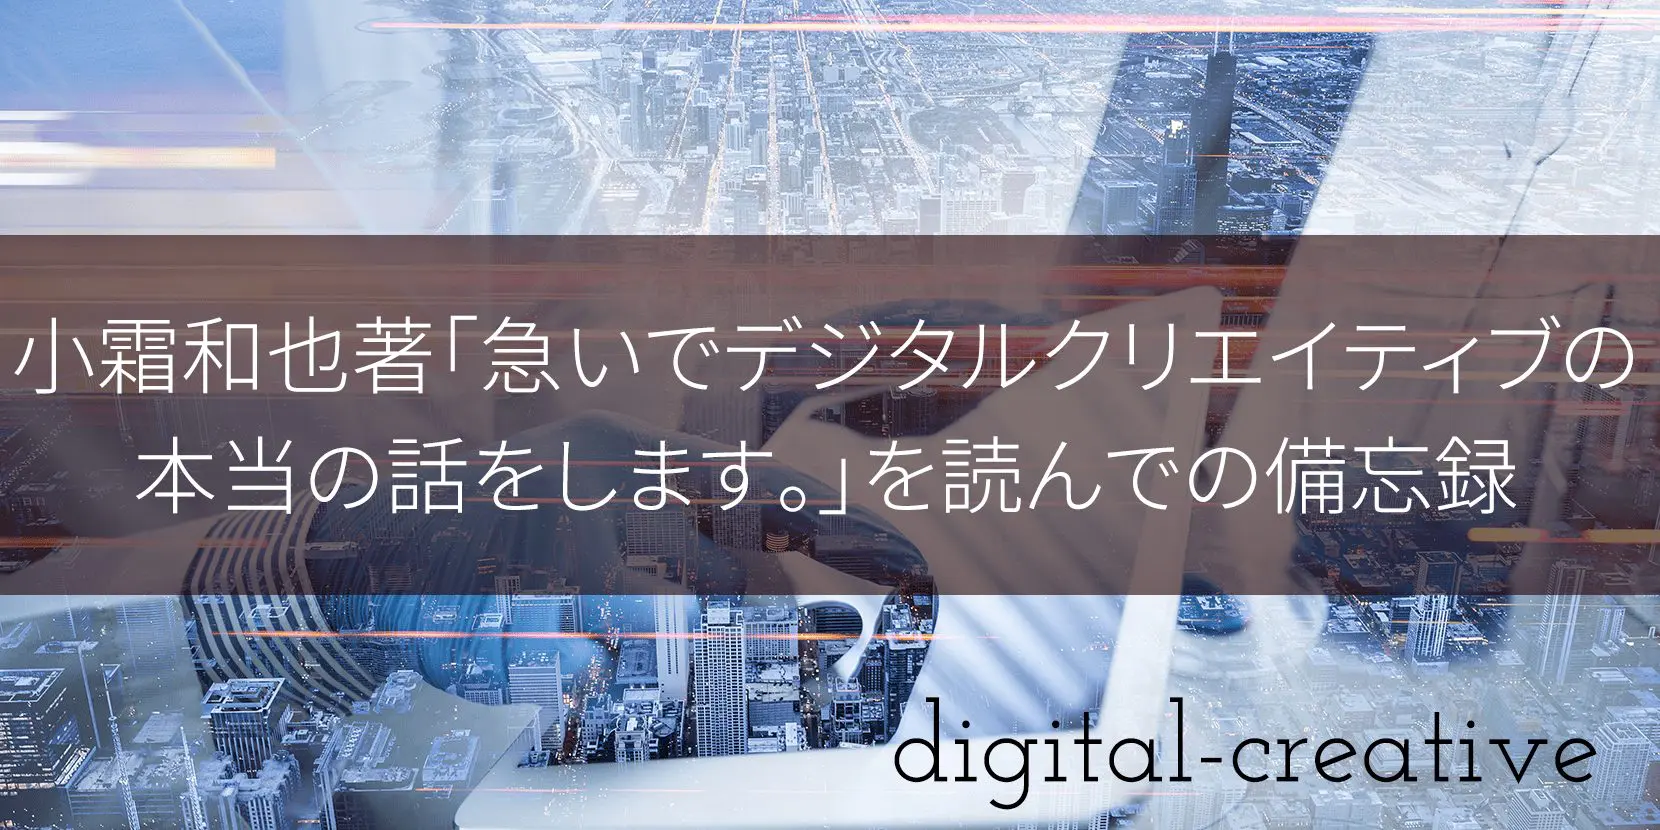 小霜和也著「急いでデジタルクリエイティブの本当の話をします。」を読んでの備忘録